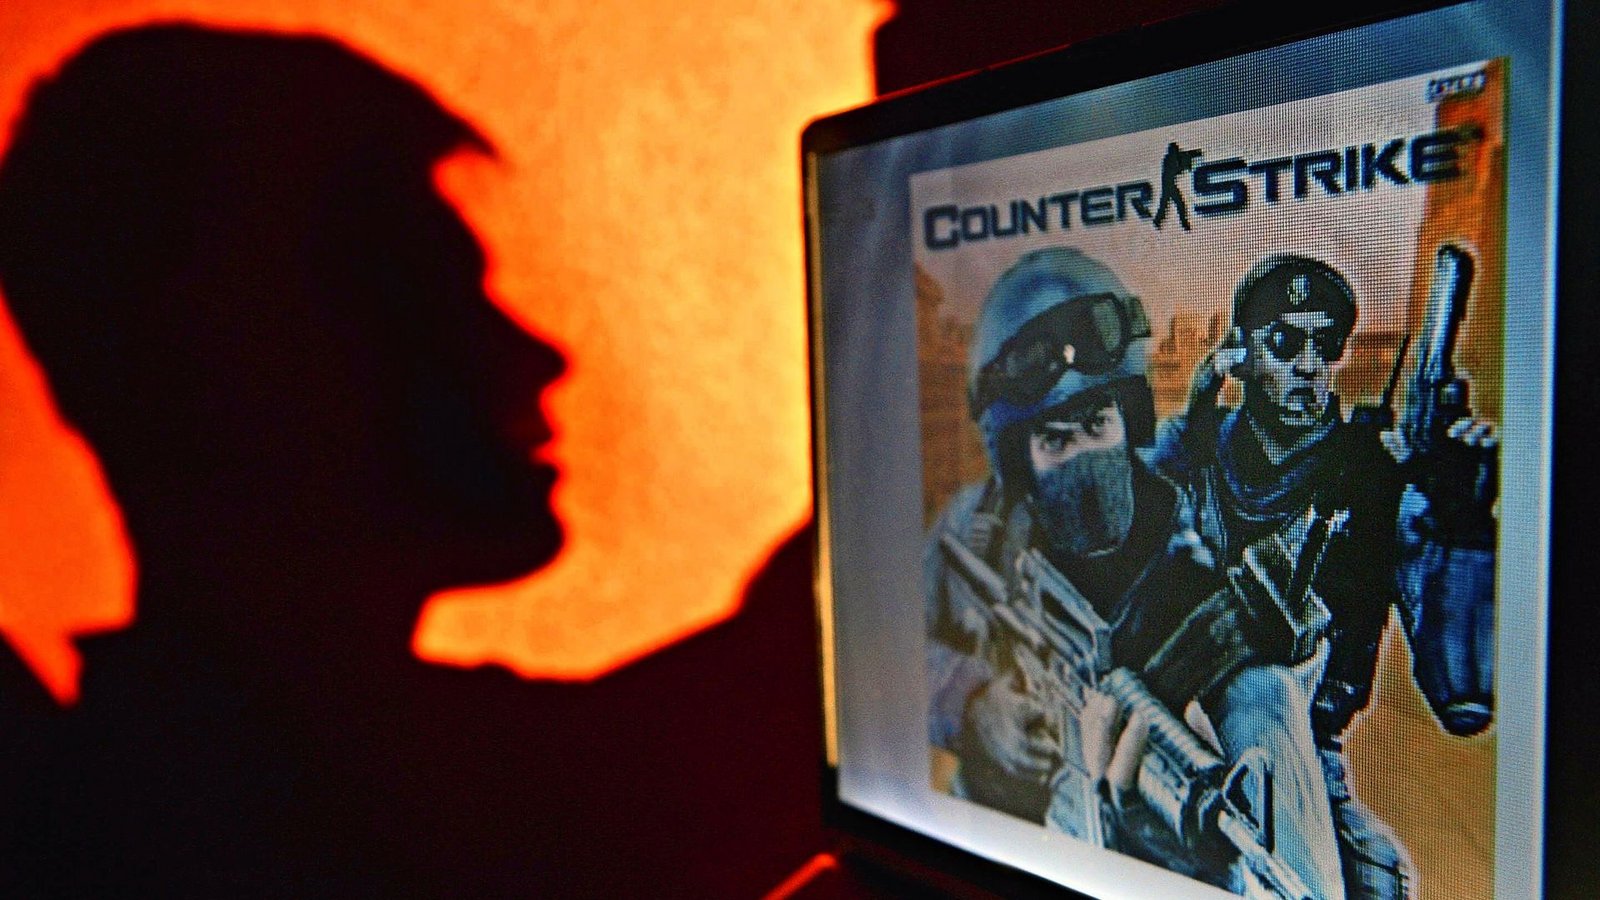 Die alte Version von „Counter Strike“ wird überarbeitet. (Archivbild)Foto: picture alliance / dpa/Patrick Pleul